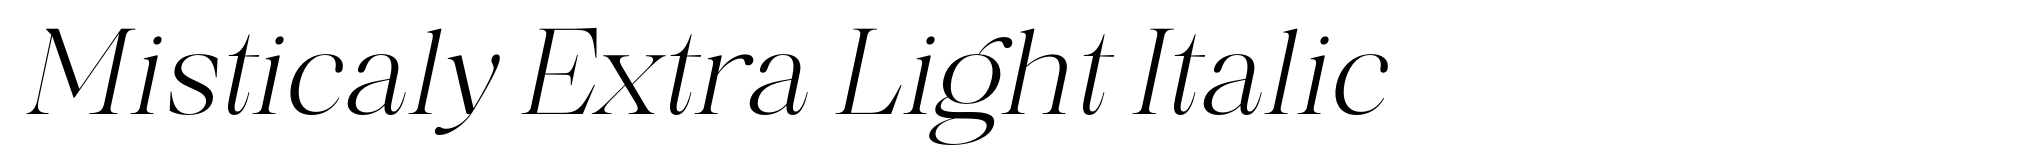 Misticaly Extra Light Italic image